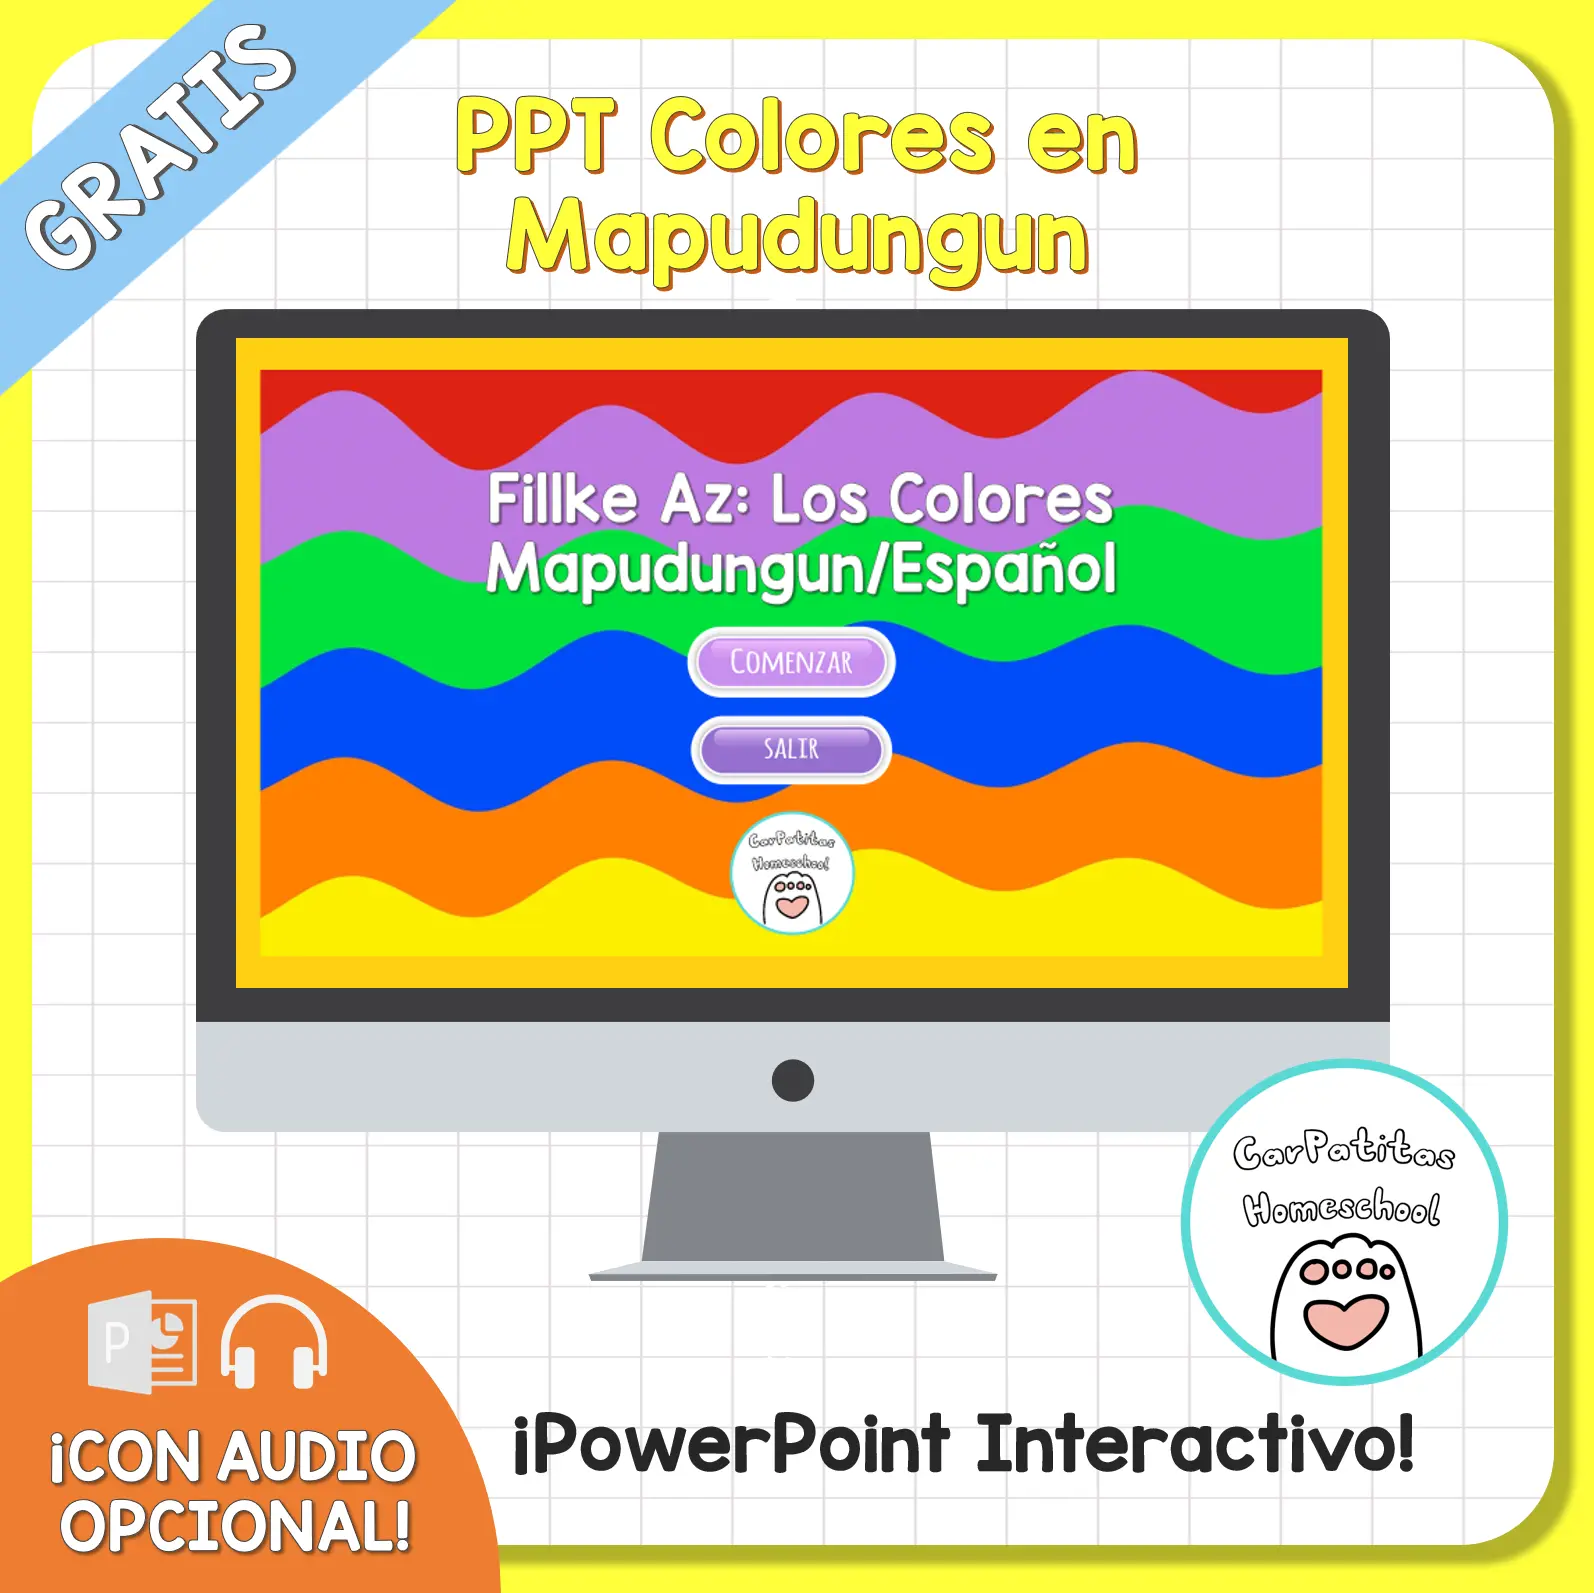 PPT Gratis: Colores en Mapudungun